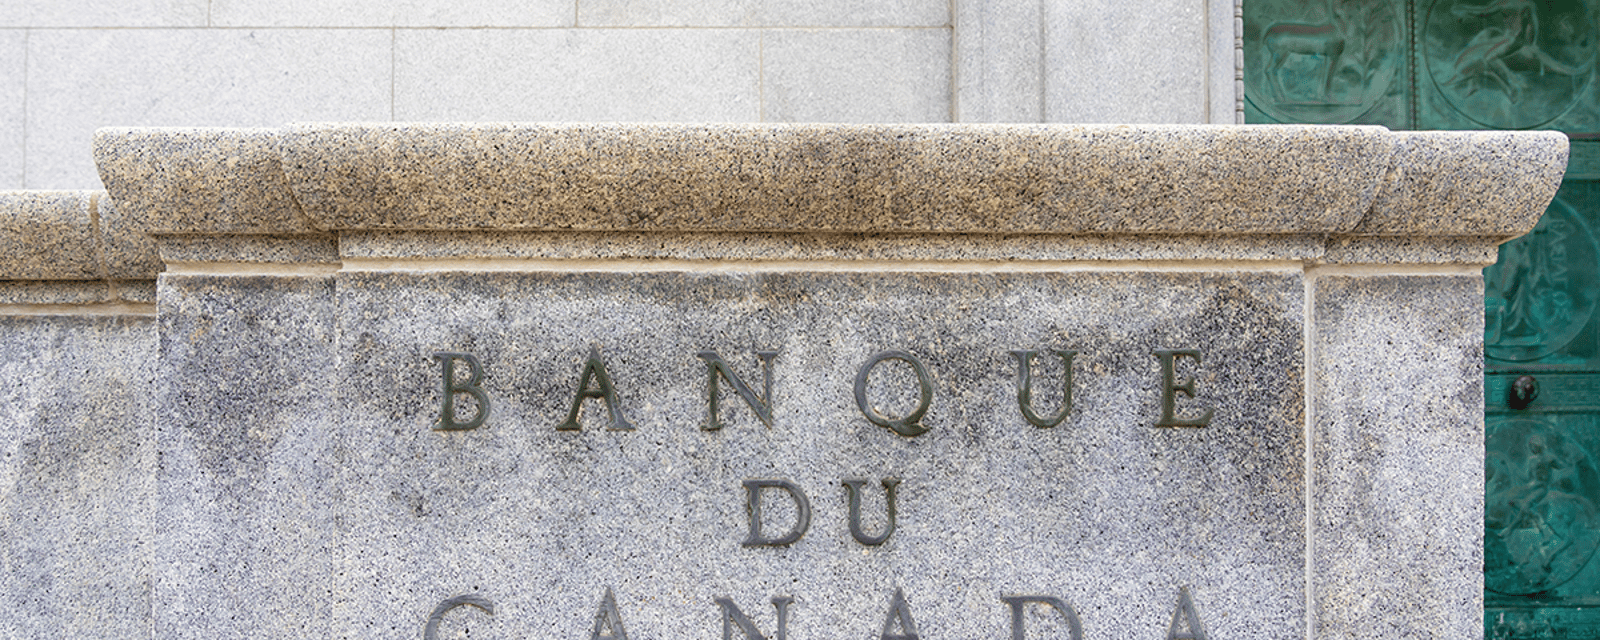 La Banque du Canada ne se gênera pas pour augmenter à nouveau le taux directeur.